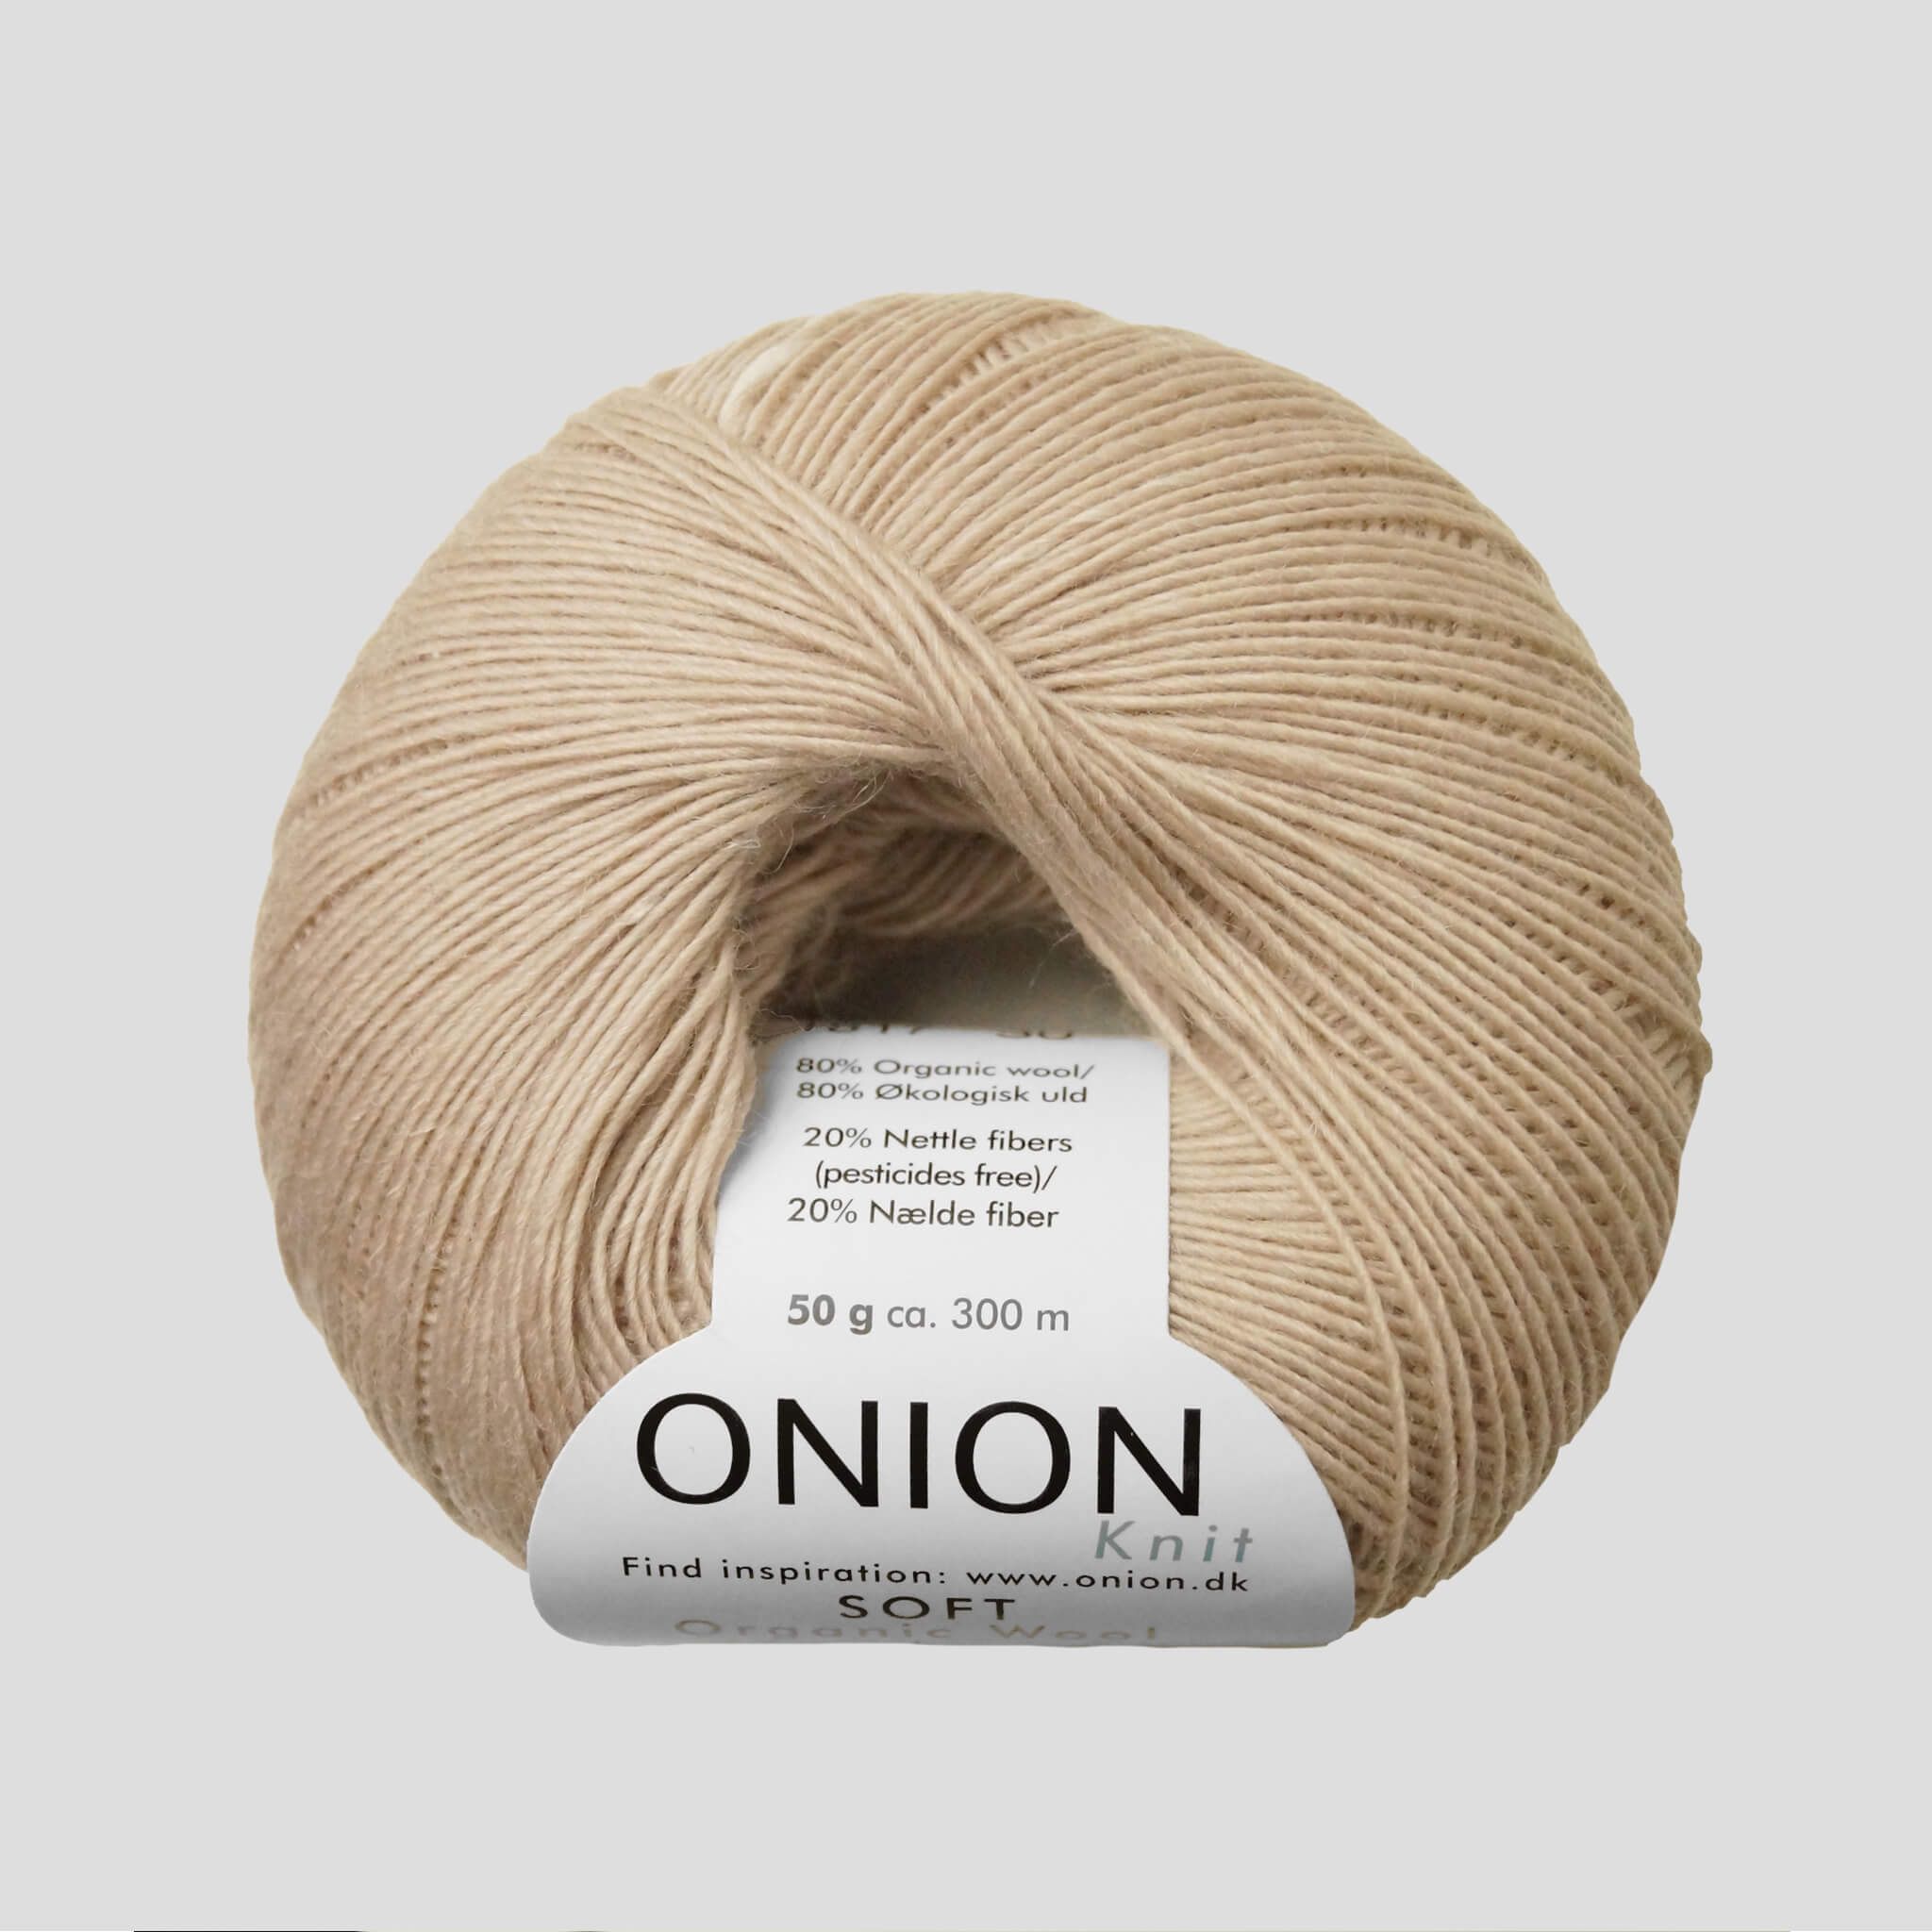 Onion Wool + Nettles - Onion Soft Organic Wool + Nettles 1517 Beige | Onion garn |